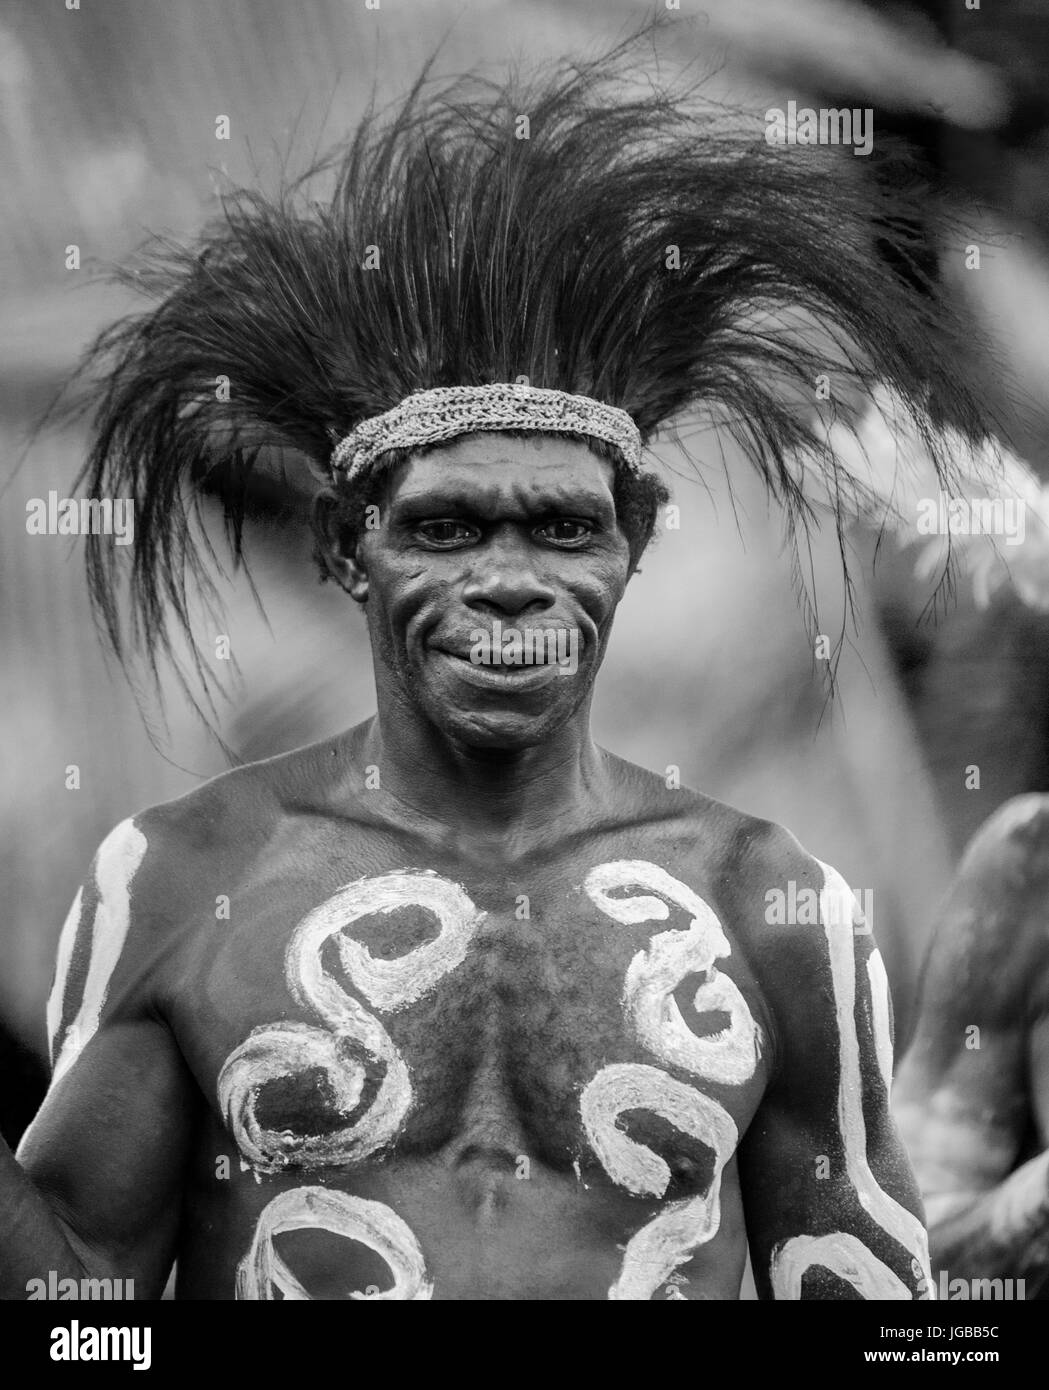 INDONESIA, Irian Jaya, ASMAT provincia, JOW VILLAGE - 12 giugno: Ritratto di un guerriero Asmat tribù in tradizionale copricapo. Foto Stock